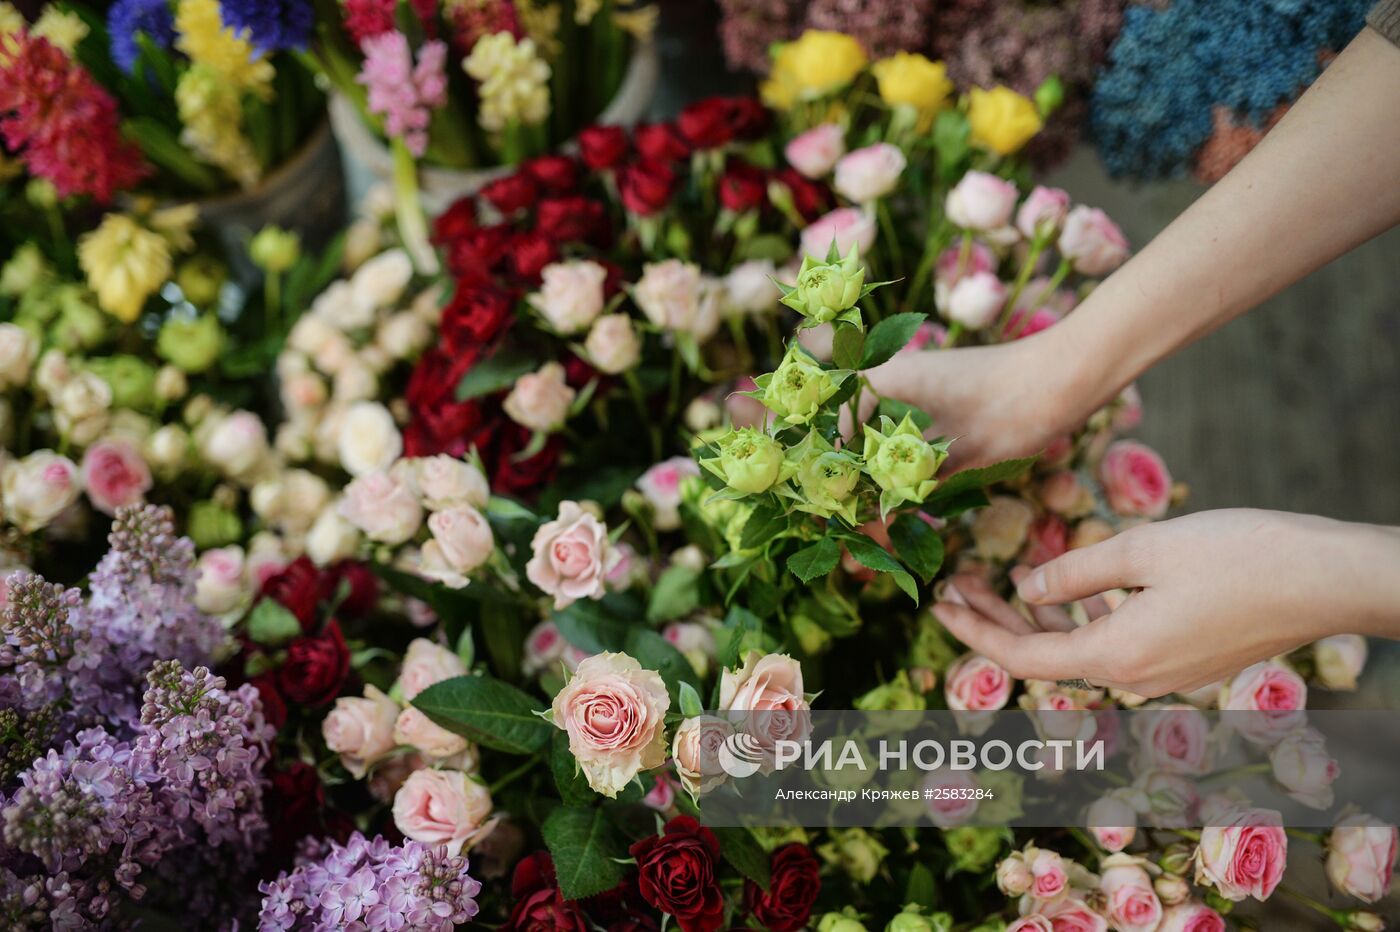 Продажа цветов в преддверии праздника 8 марта в Новосибирске